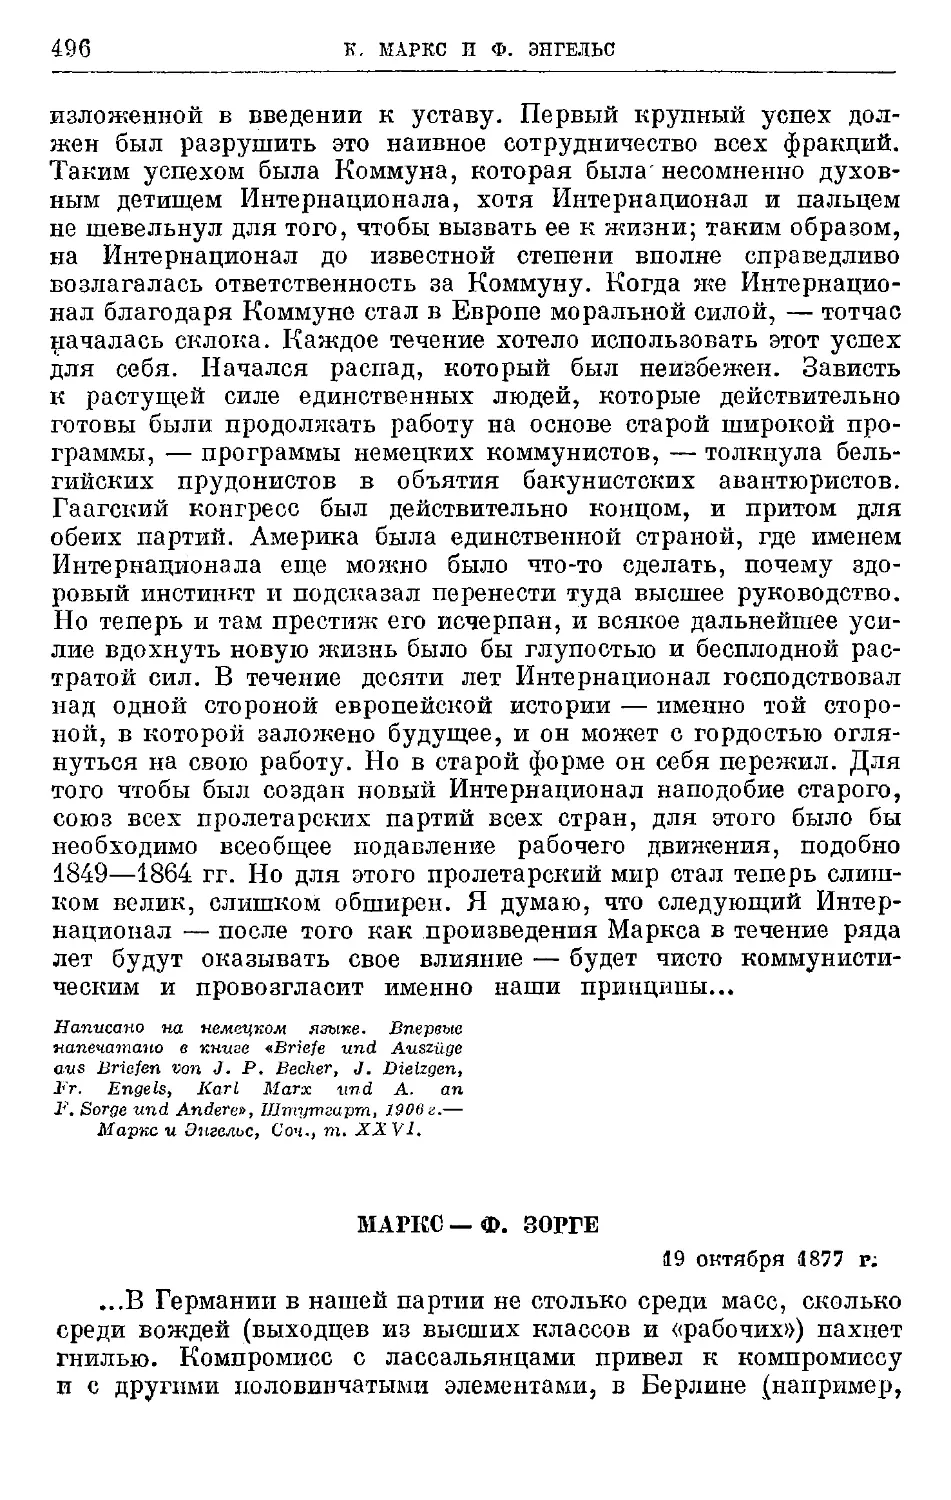 Маркс — Ф. Зорге. 19 октября 1877г